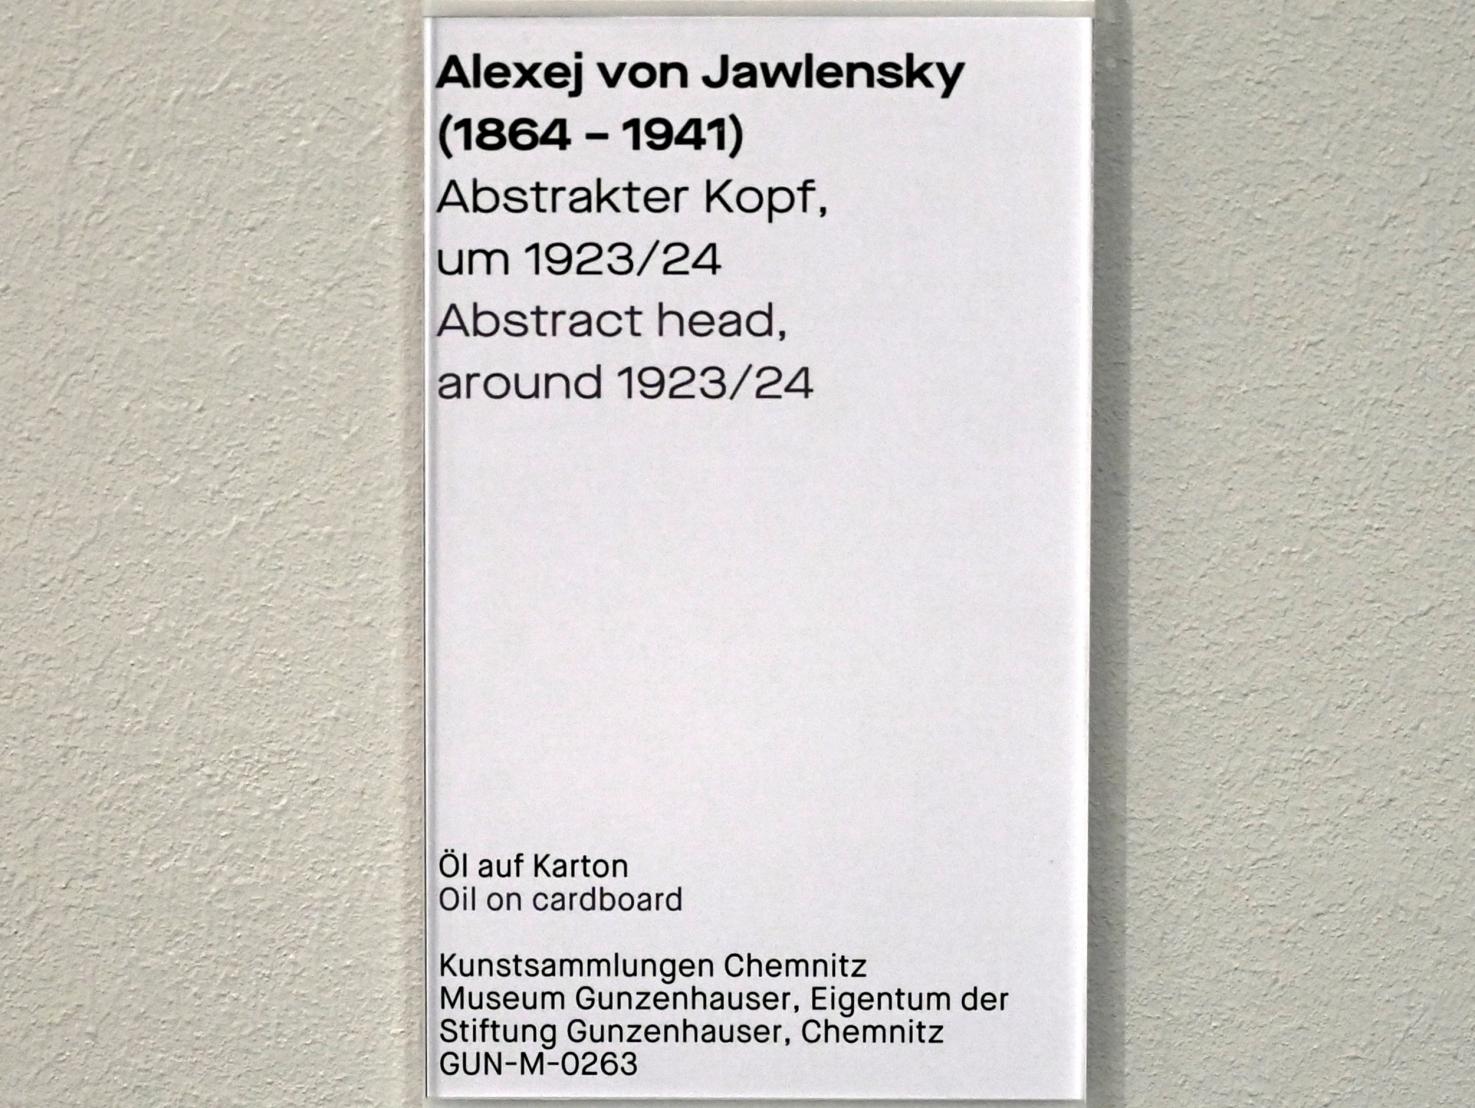 Alexej von Jawlensky (1893–1938), Abstrakter Kopf, Chemnitz, Museum Gunzenhauser, Saal 3.11 - Bauhaus, um 1923–1924, Bild 2/2